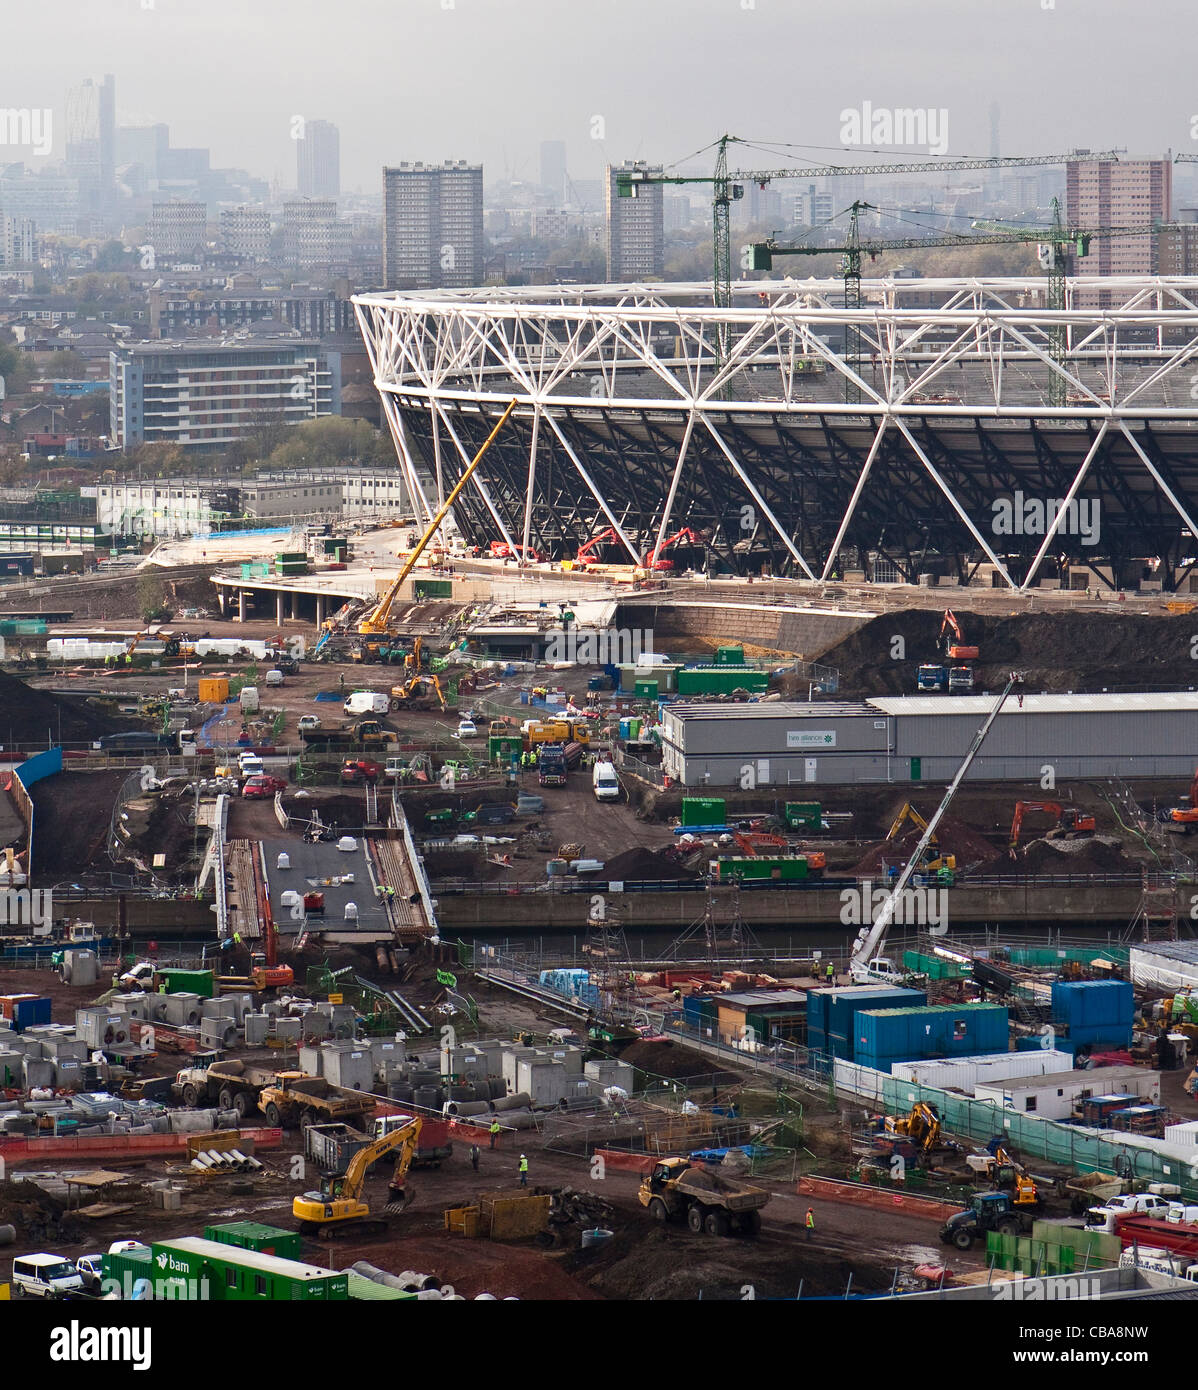 Nov 2009 - Olympic Park, Londres - vue aérienne sur le stade olympique en construction pour les prochains jeux d'été 2012 Banque D'Images